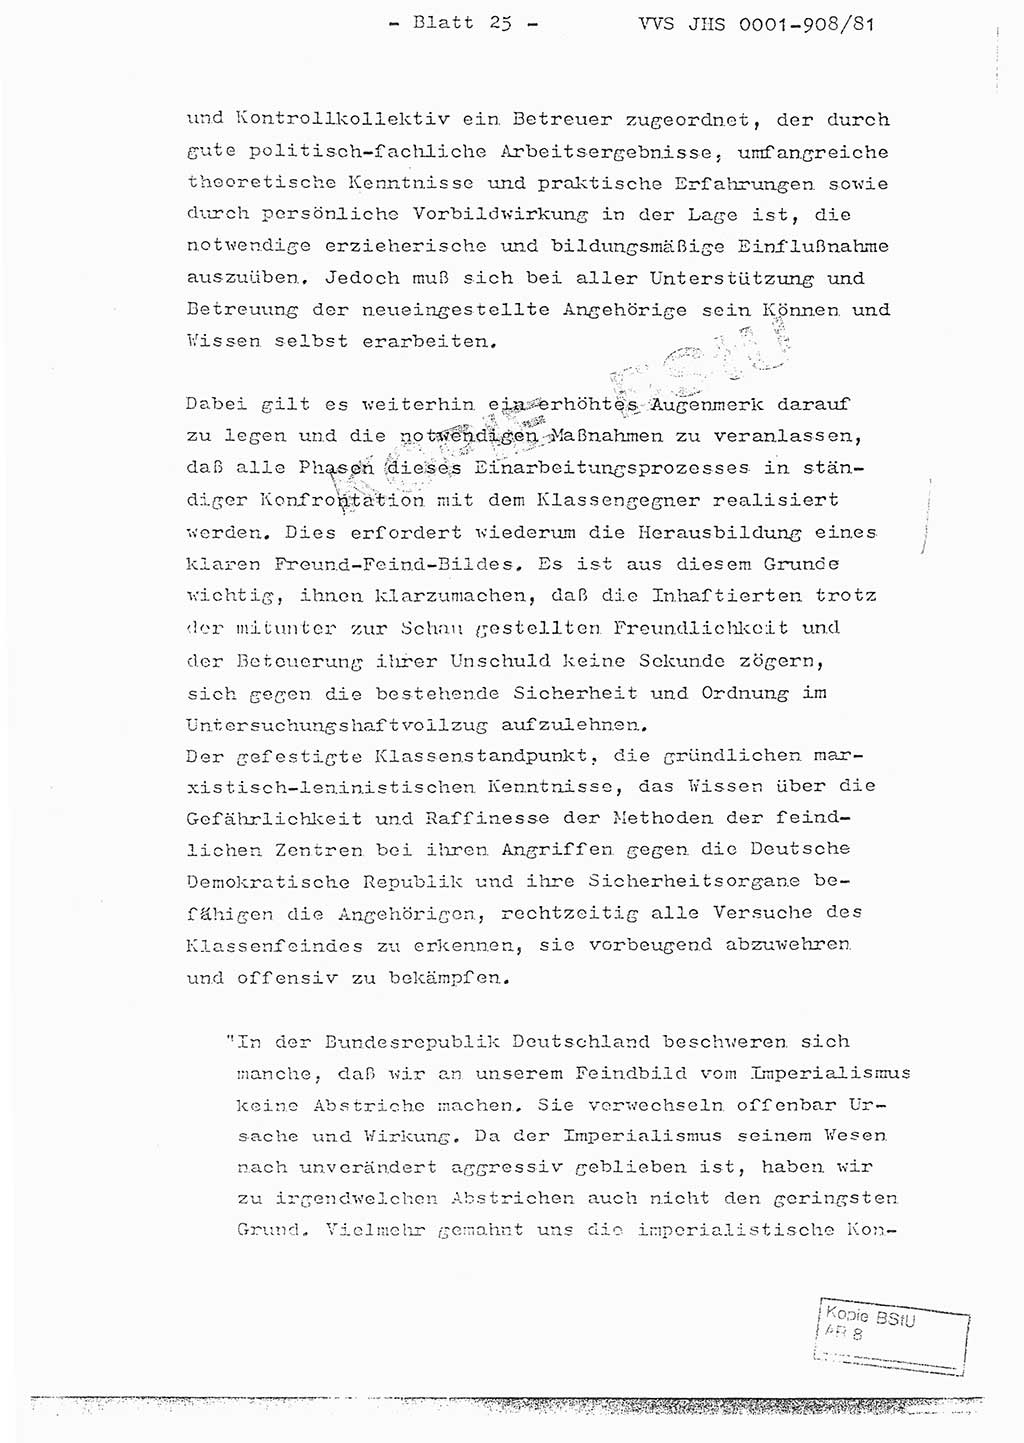 Fachschulabschlußarbeit Oberleutnant Wolfgang Wittmann (Abt. ⅩⅣ), Ministerium für Staatssicherheit (MfS) [Deutsche Demokratische Republik (DDR)], Juristische Hochschule (JHS), Vertrauliche Verschlußsache (VVS) o001-908/82, Potsdam 1982, Blatt 25 (FS-Abschl.-Arb. MfS DDR JHS VVS o001-908/82 1982, Bl. 25)